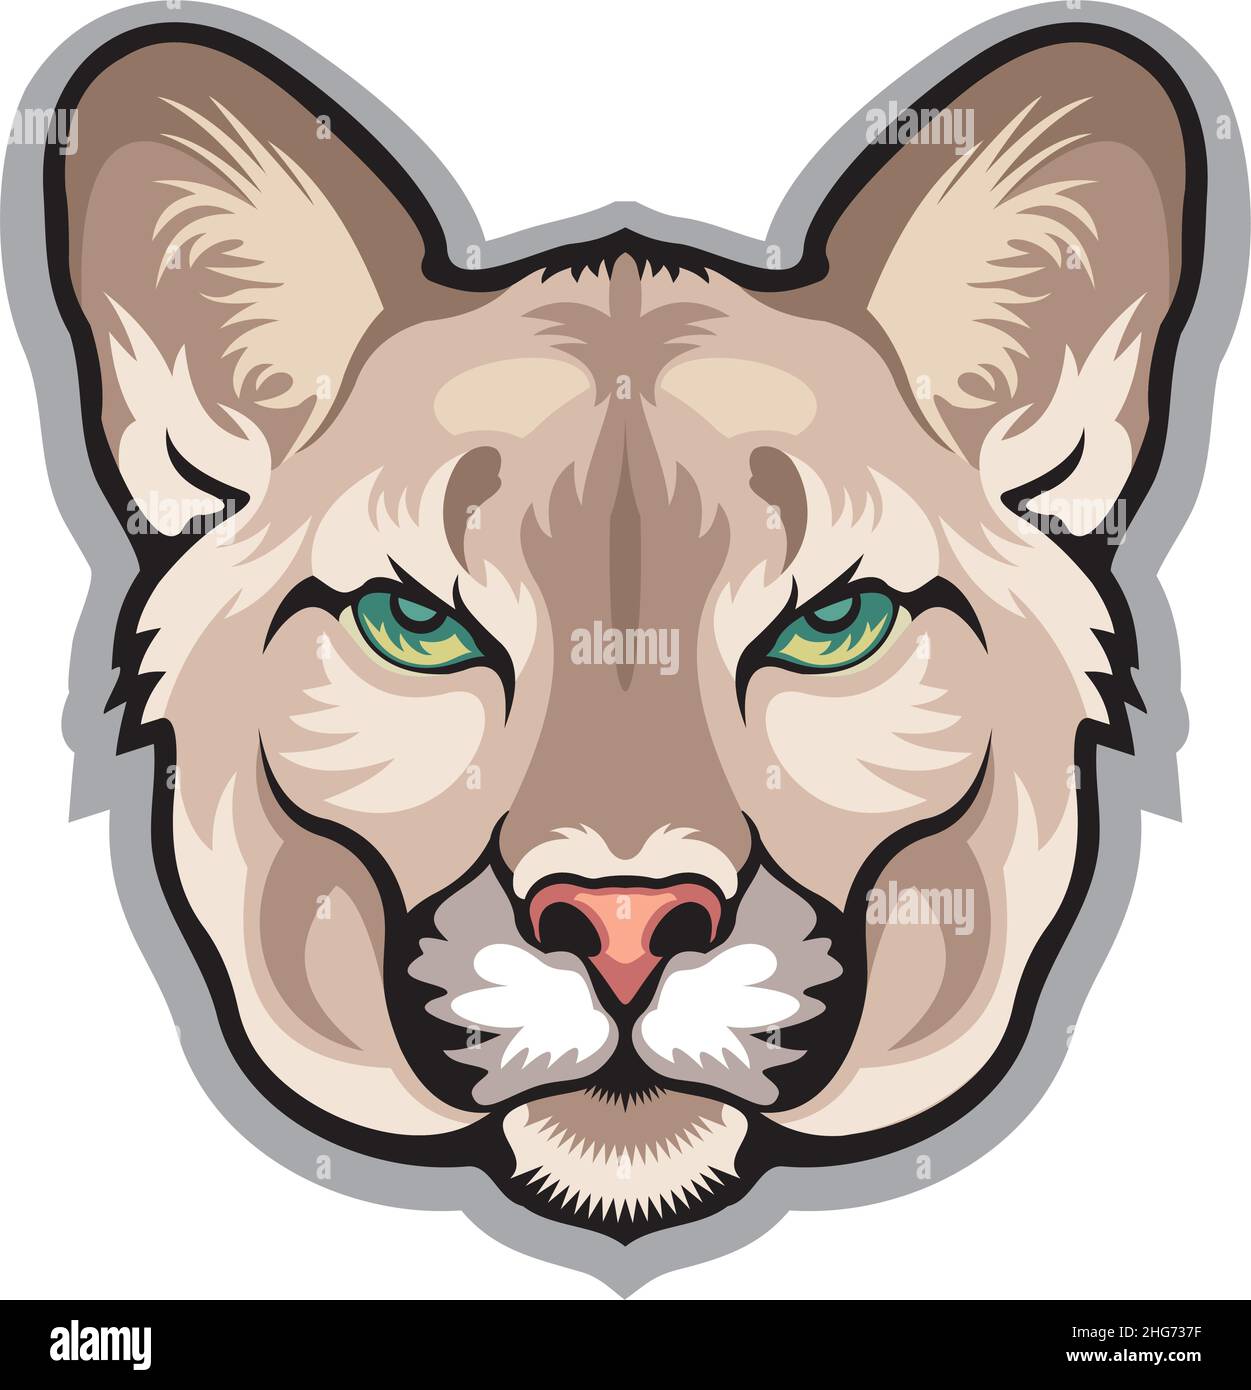 Cougar (Puma, Mountain lion) Animal mascot Stock Vector